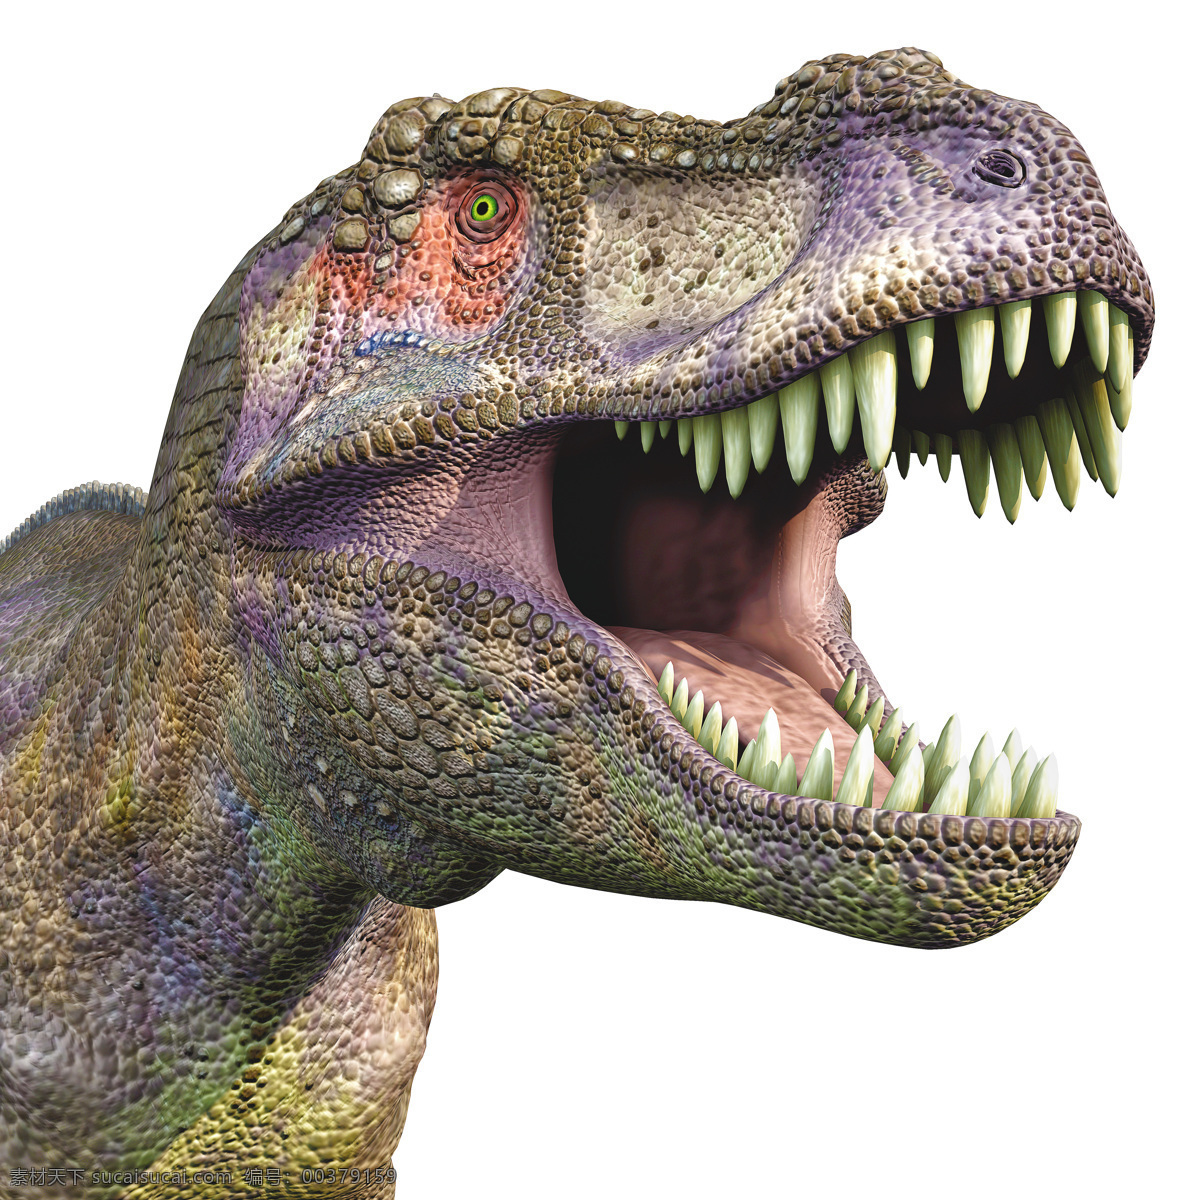 嚎叫的霸王龙 嚎叫 霸王龙 恐龙 3d动画 侏罗纪 侏罗纪公园 陆地动物 生物世界 白色